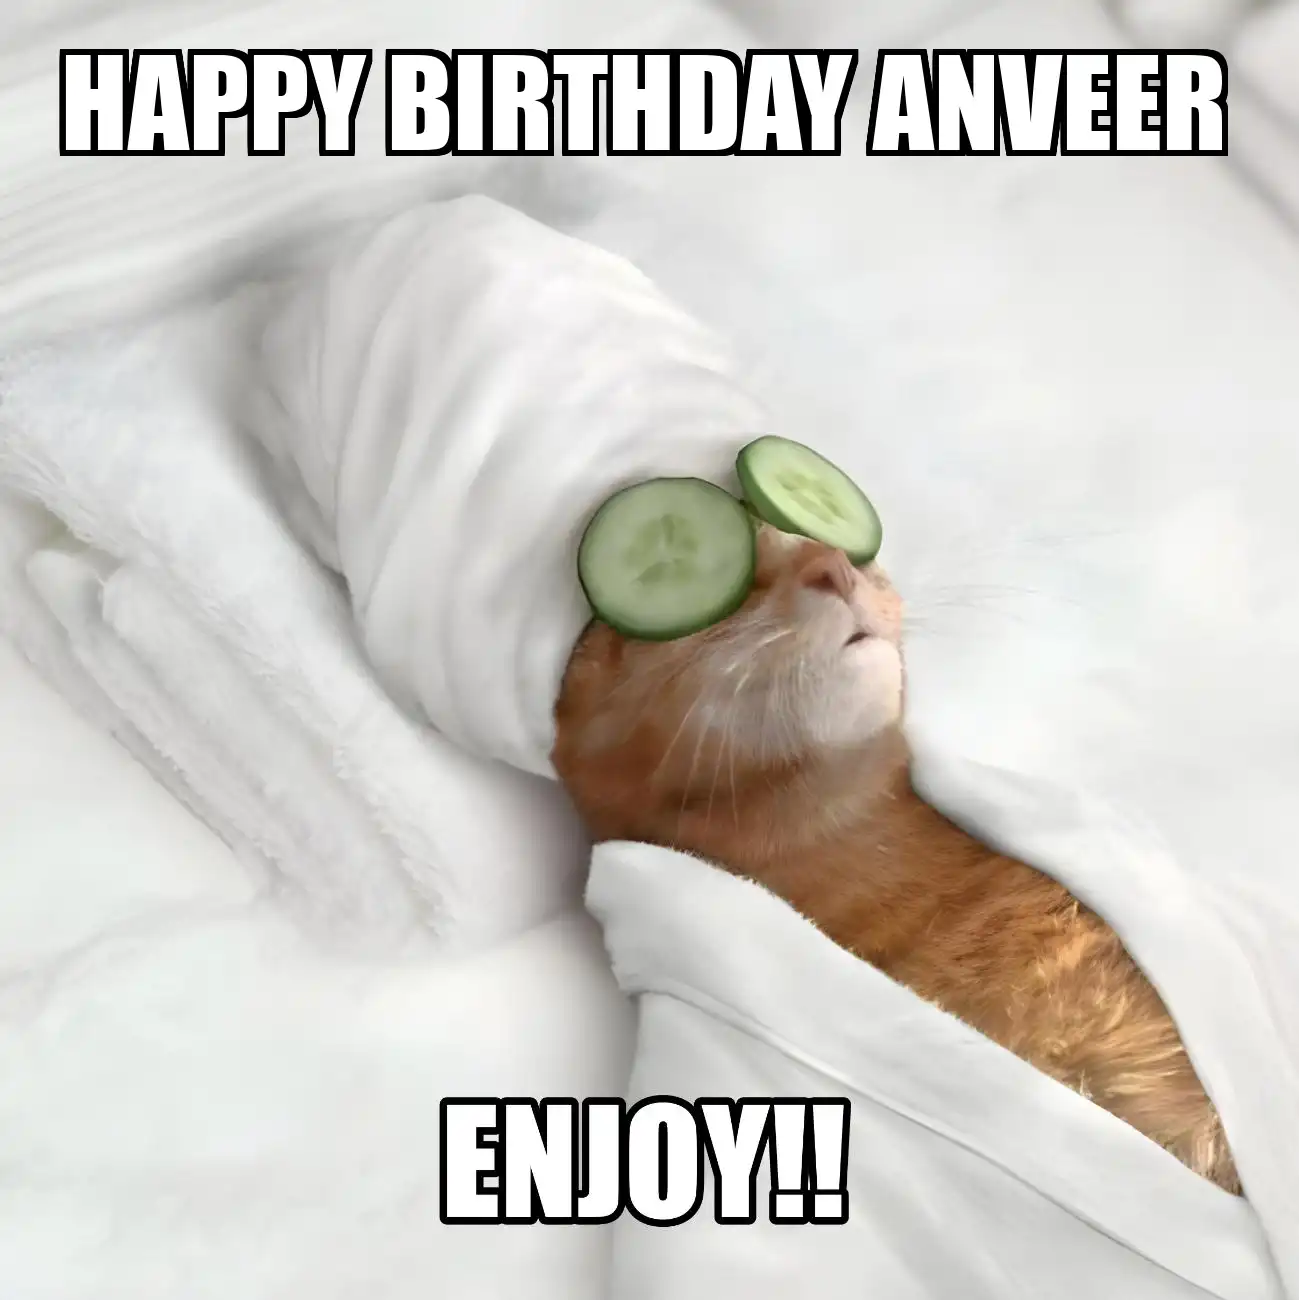 Happy Birthday Anveer Enjoy Cat Meme